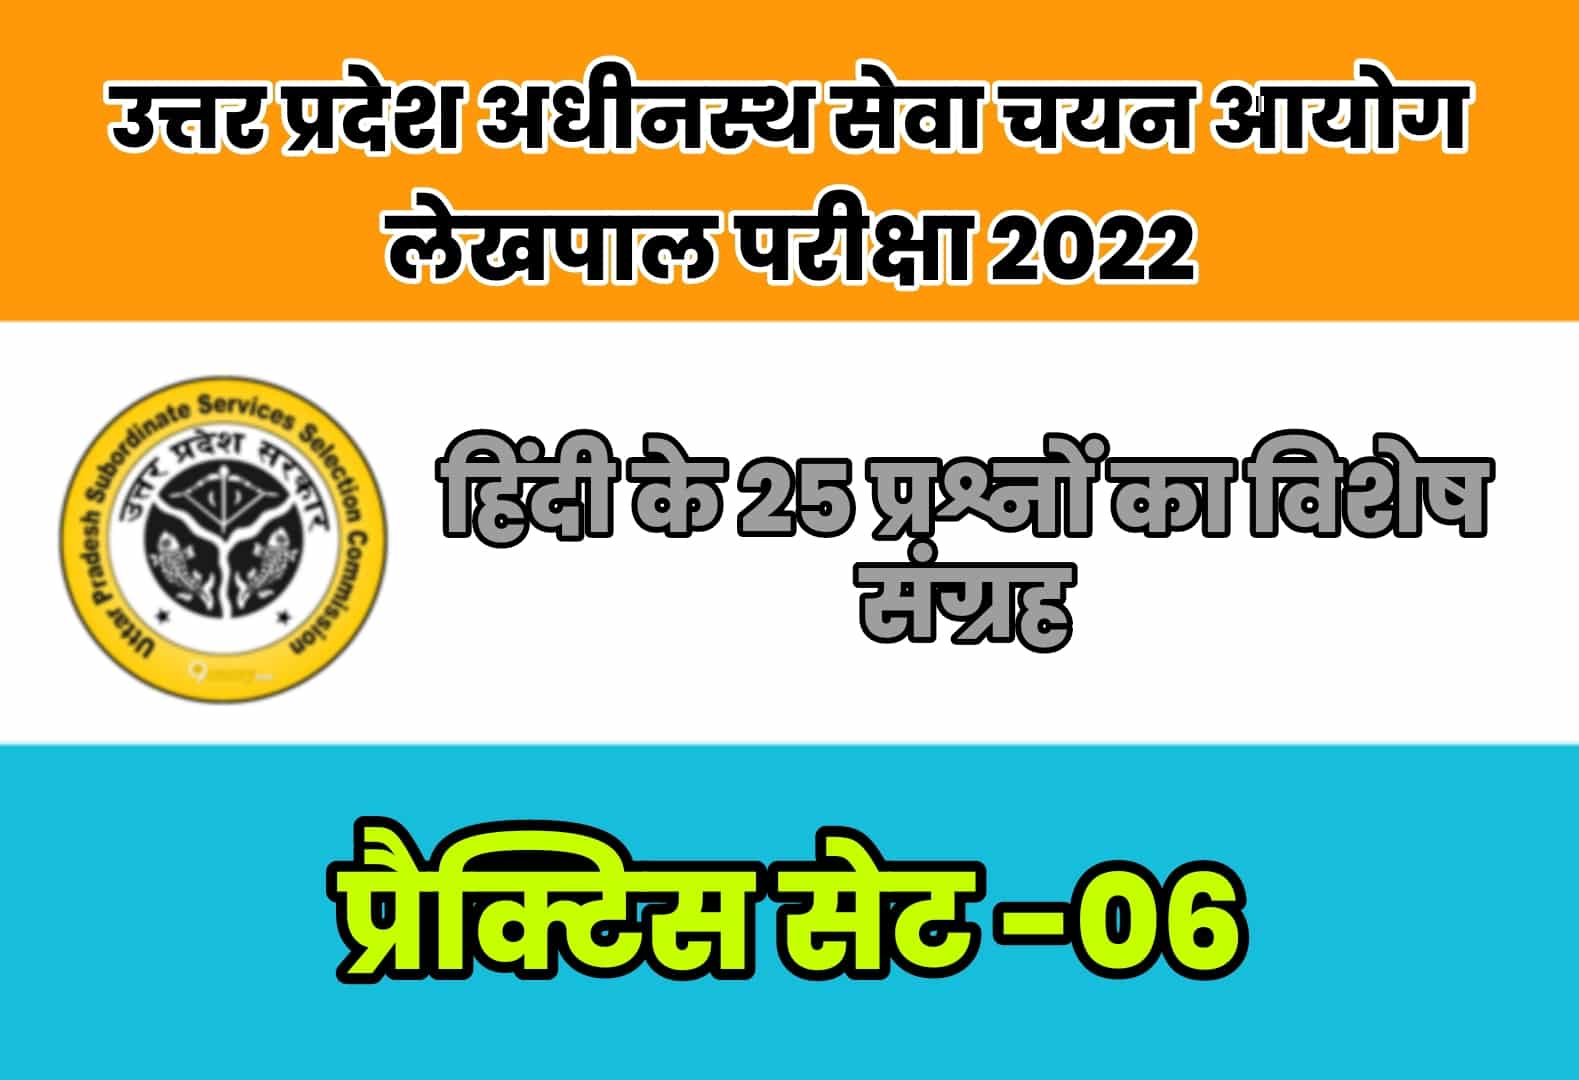 UP Lekhpal Exam 2022 प्रैक्टिस सेट 06 : नवीनतम पाठ्यक्रम पर आधारित हिंदी के 25 मुख्य प्रश्न, अवश्य करें अध्ययन